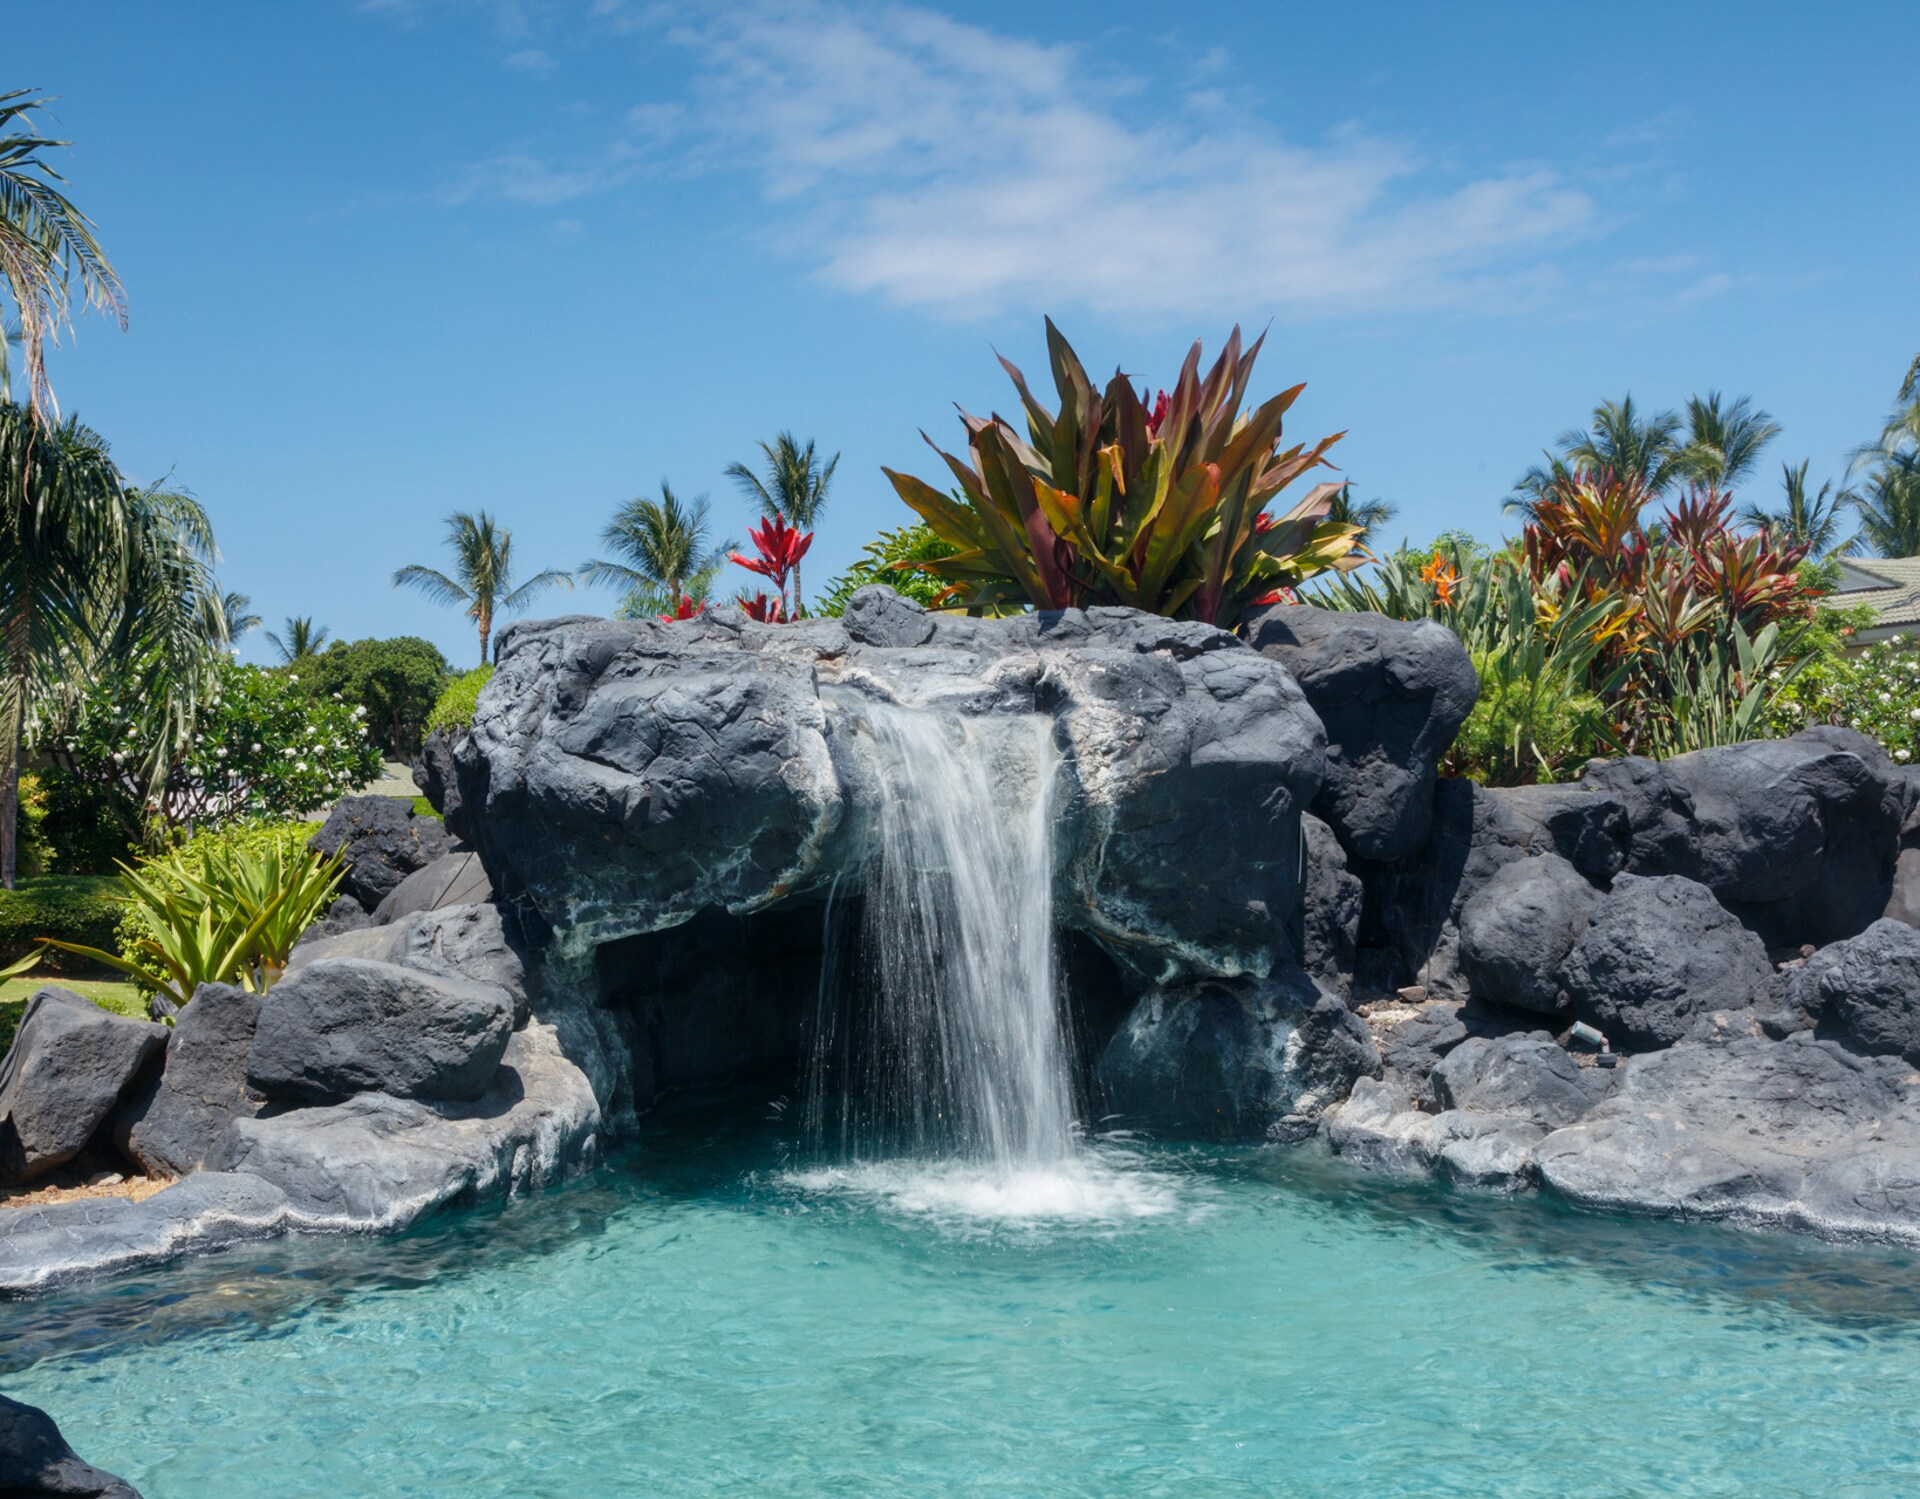 Islands at Mauna Lani pool - swim in grotto